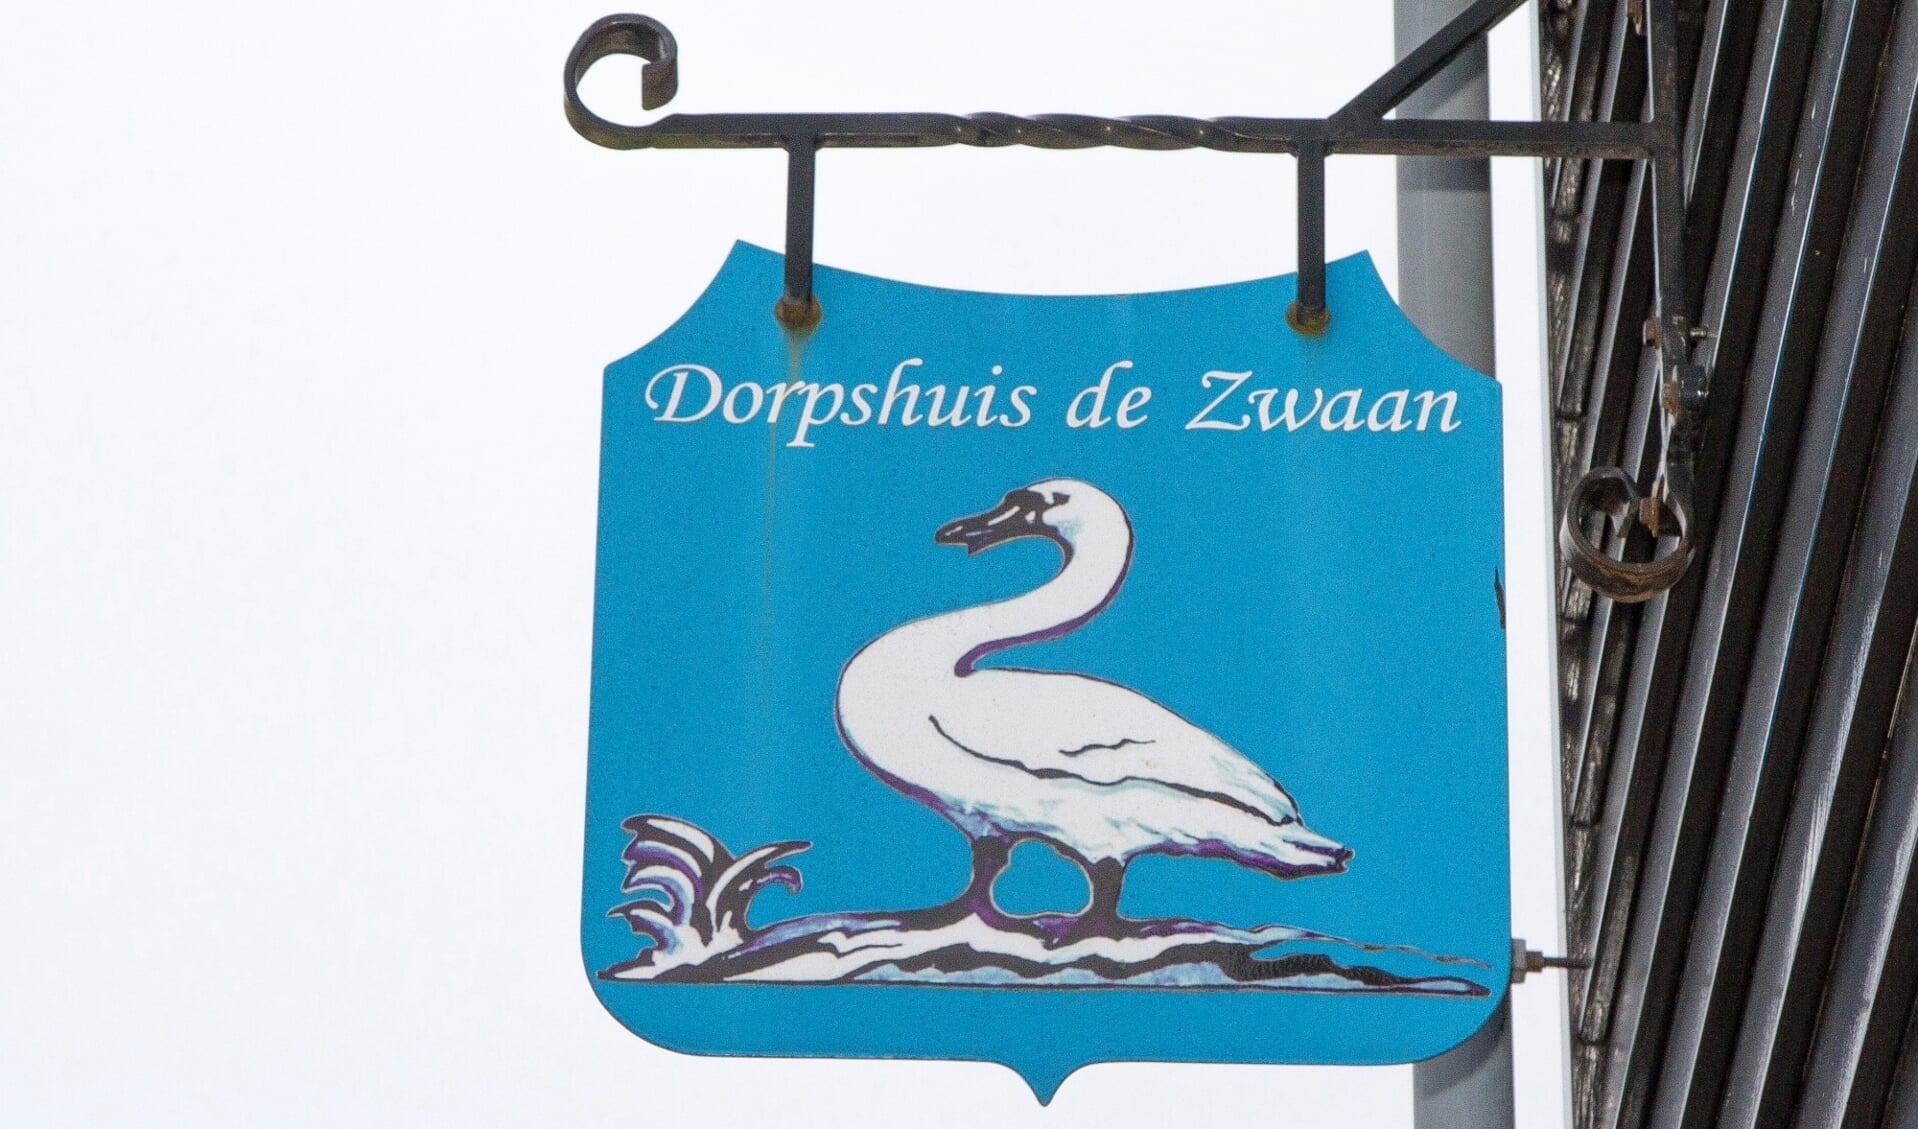 De avond begint om 20.00 uur in Dorpshuis de Zwaan.